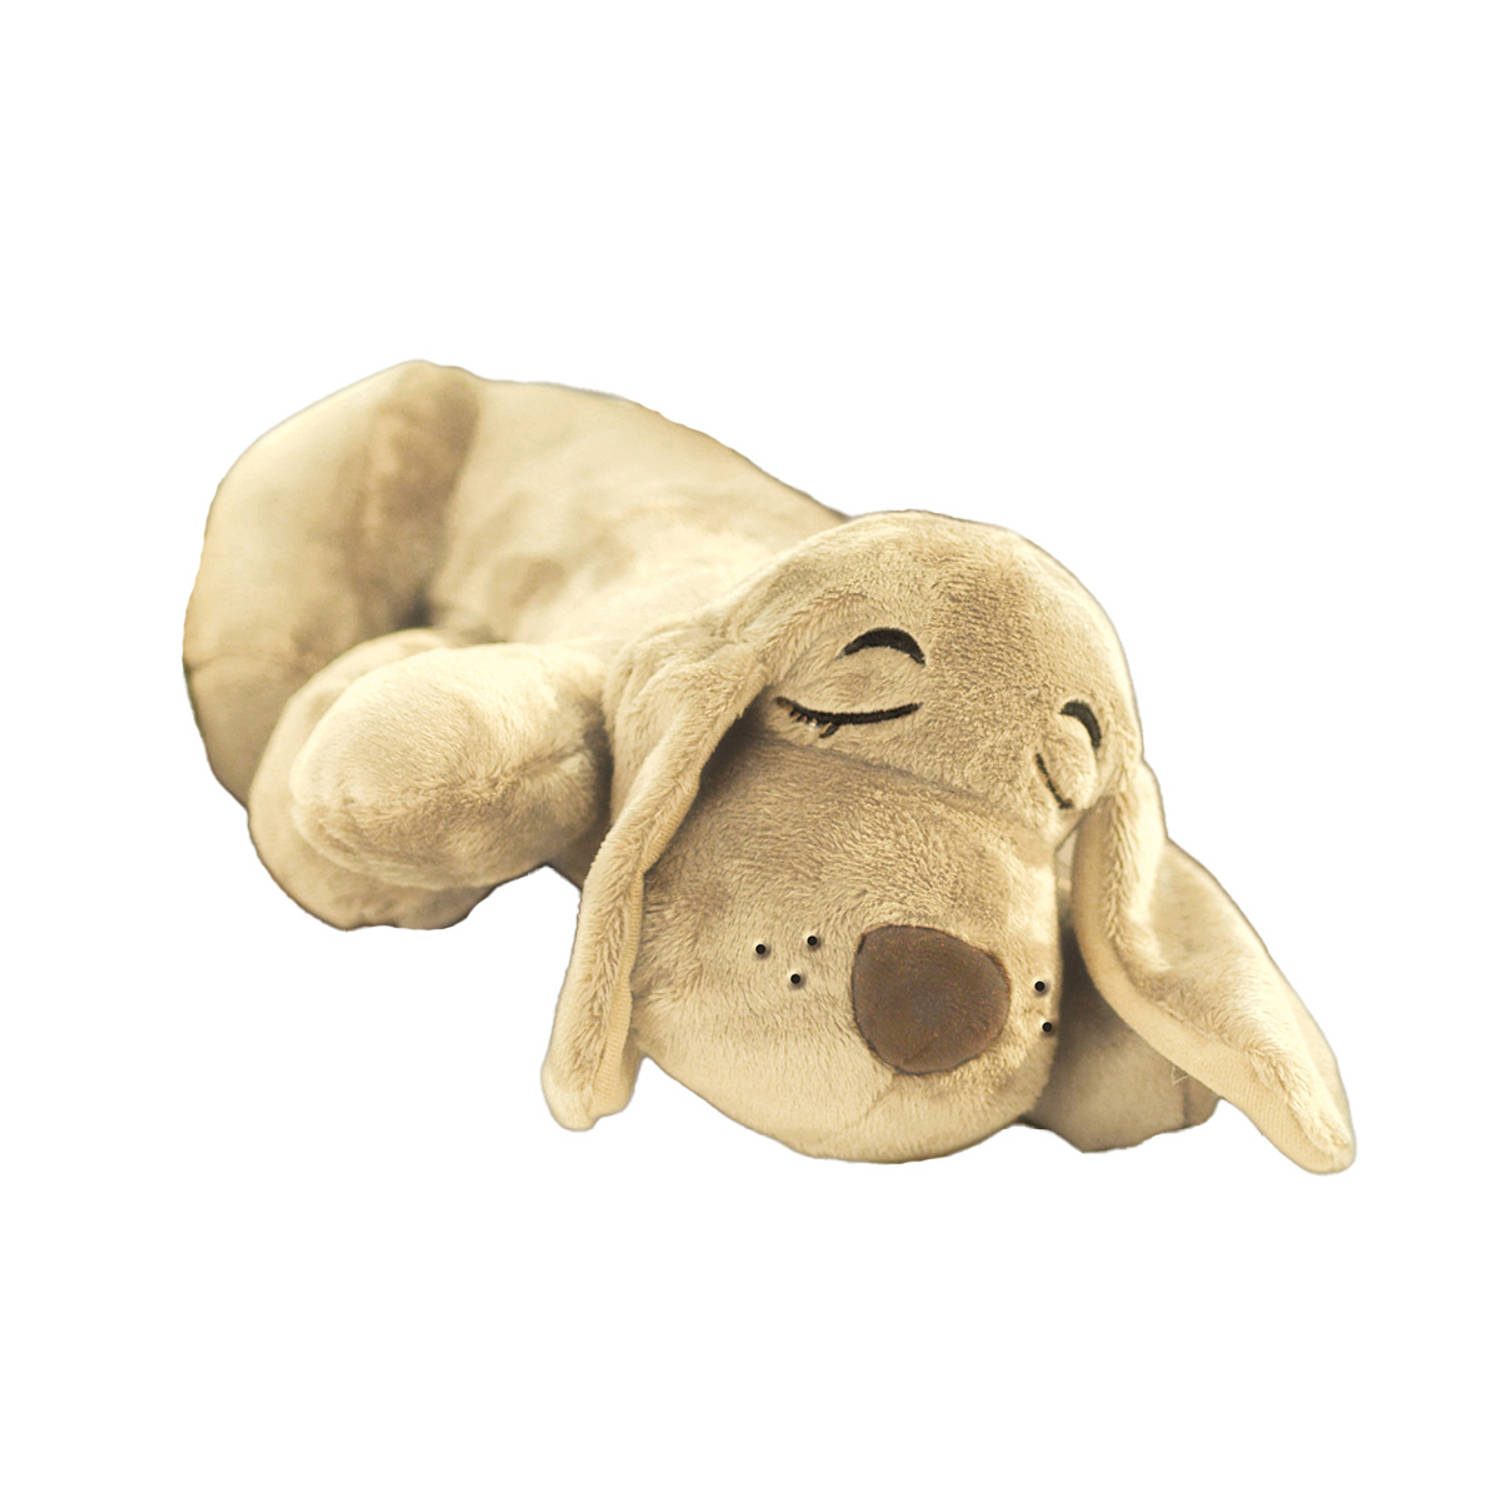 HuggiePup, hartslagknuffel - knuffelhond met hartslag en warmhoud zakje – Warmte knuffel – puppy knuffel – Puppyknuffel met hartslag – Snuggle puppy - Heartbeat